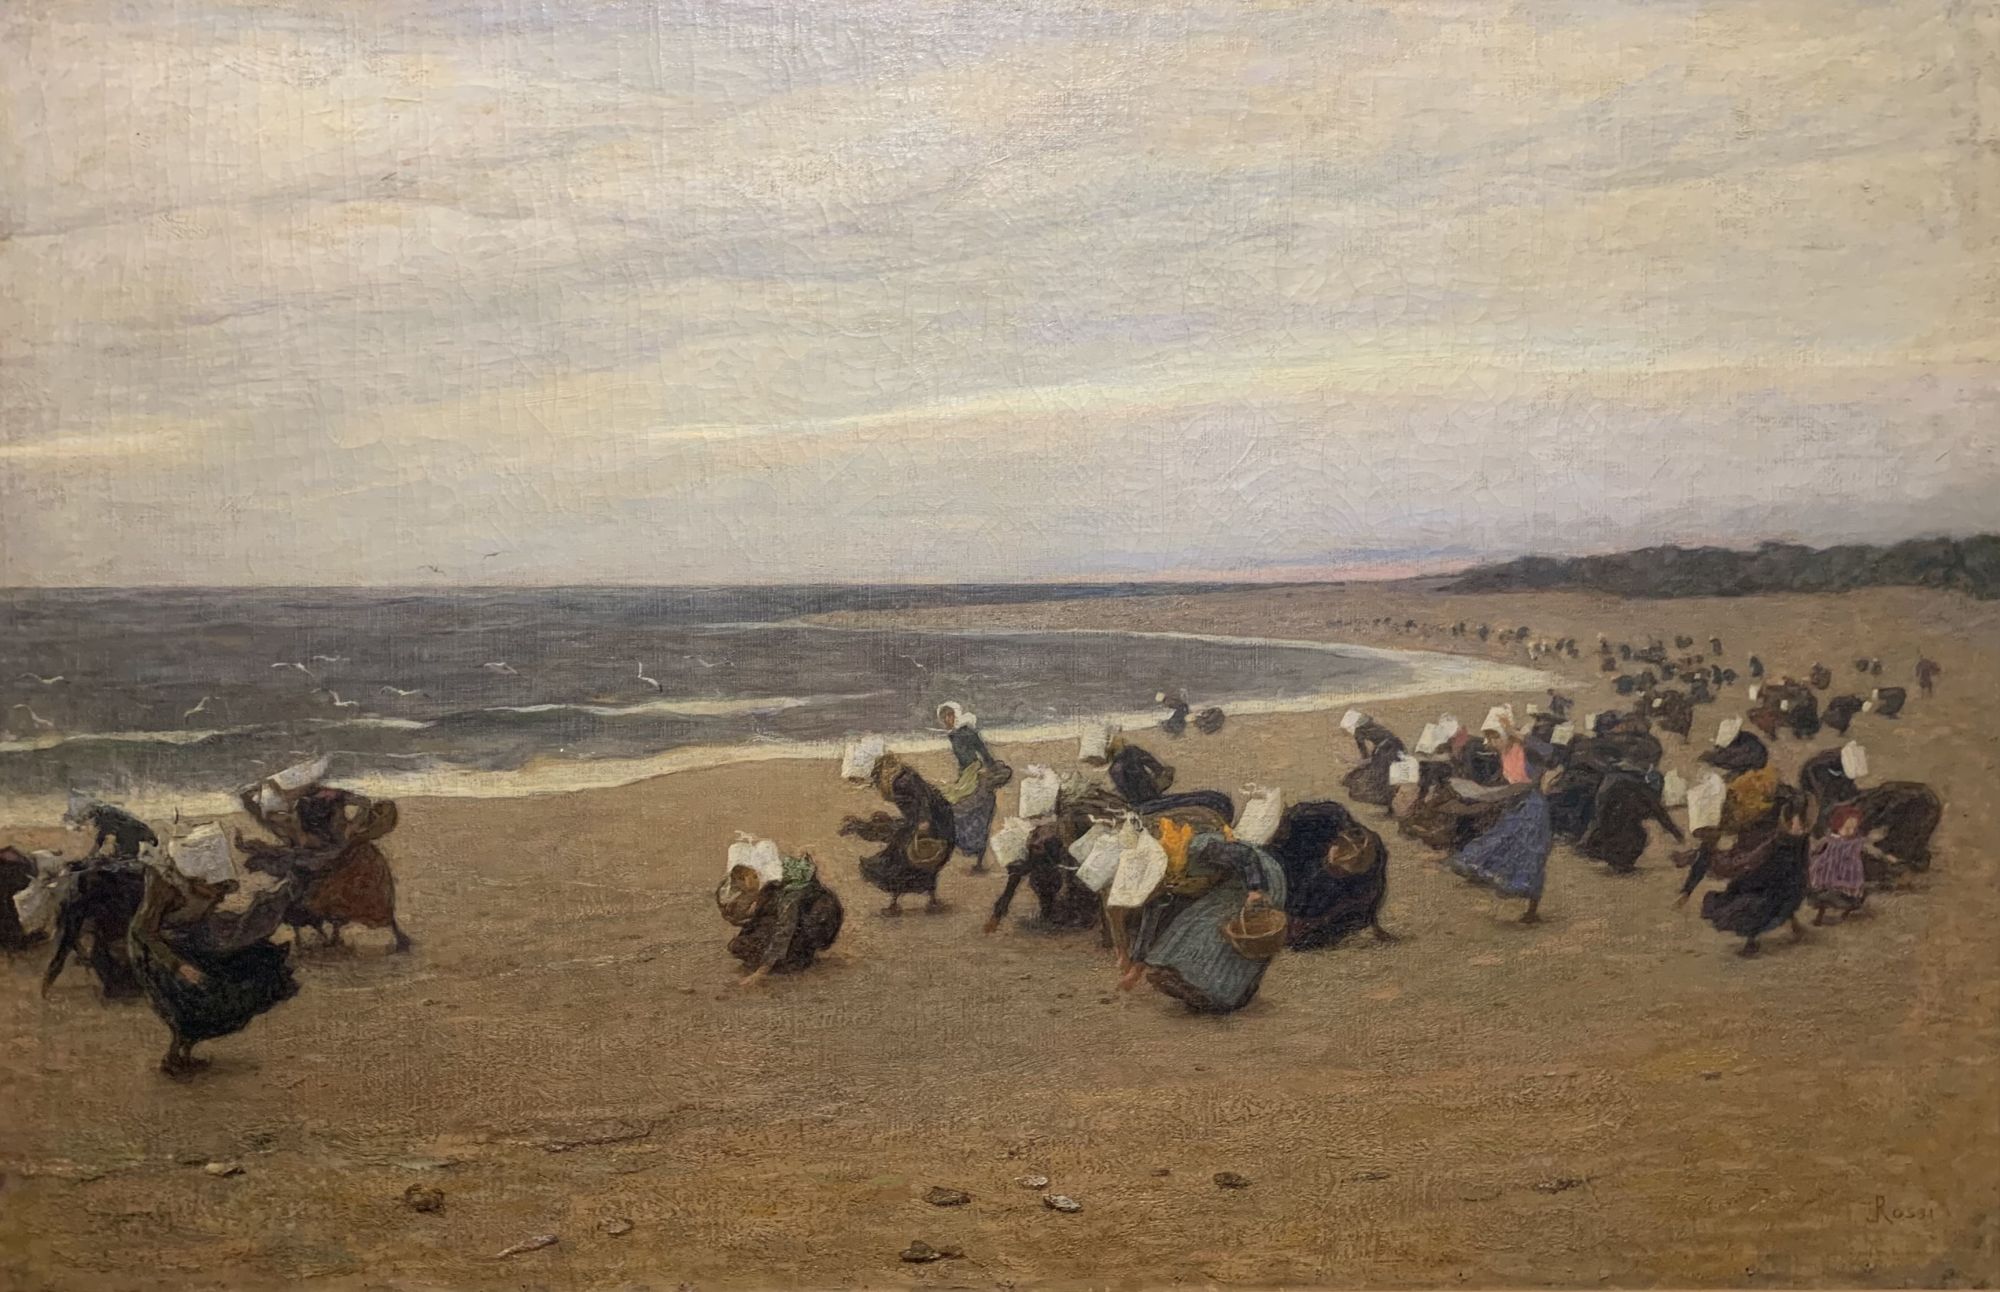 Luigi Rossi, La raccolta delle ostriche, Atlantico, 1905 - 1910, olio su tela